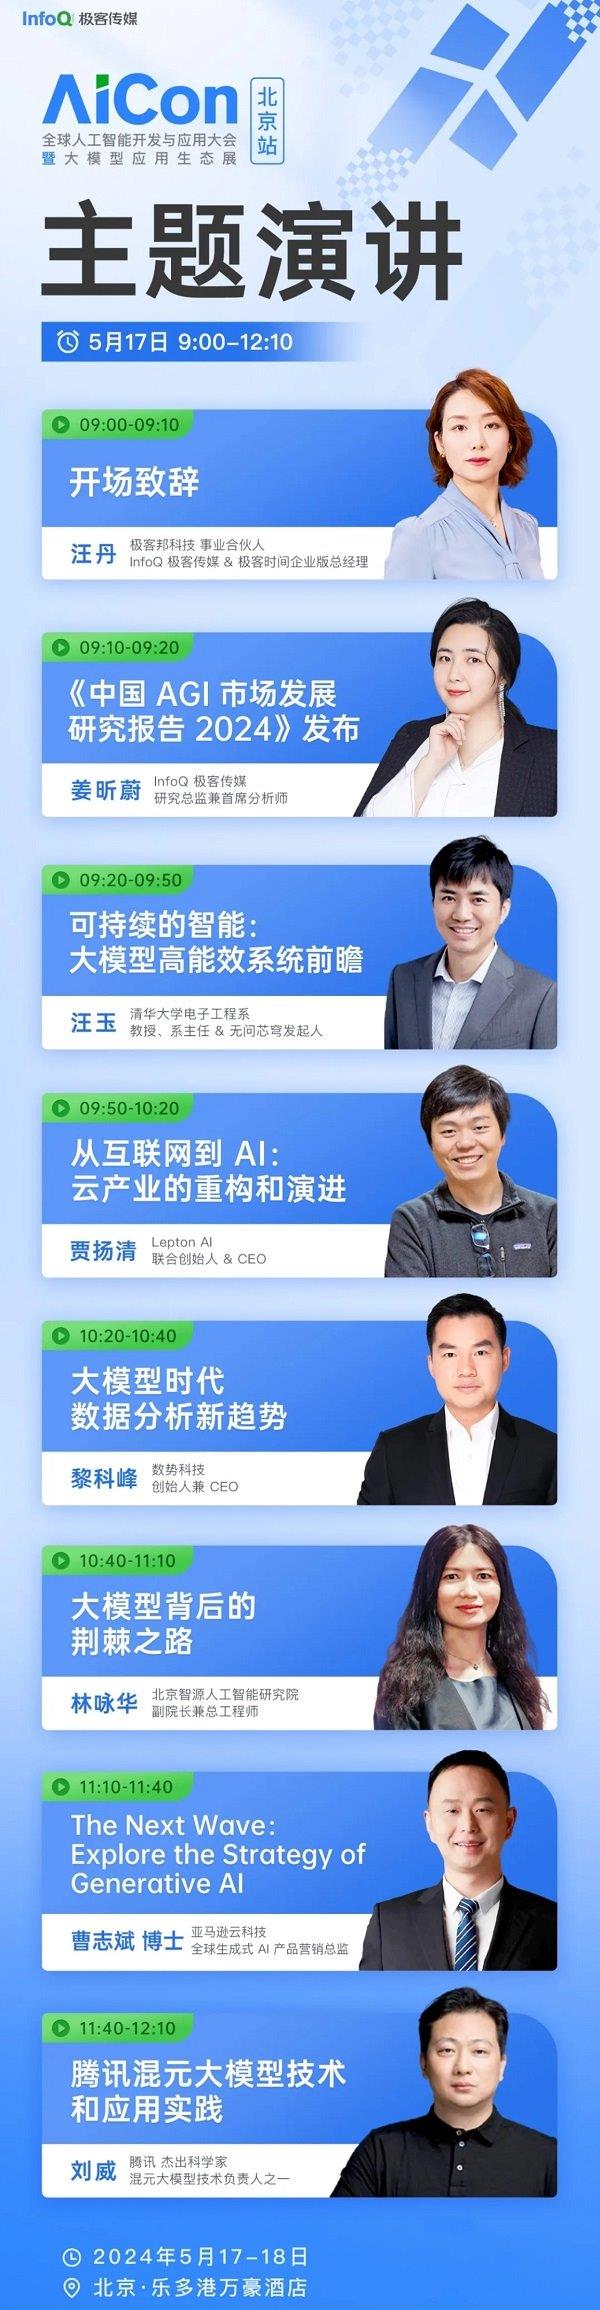 硅谷视野+中国实践 | AICon携AI黑科技登陆北京  第1张